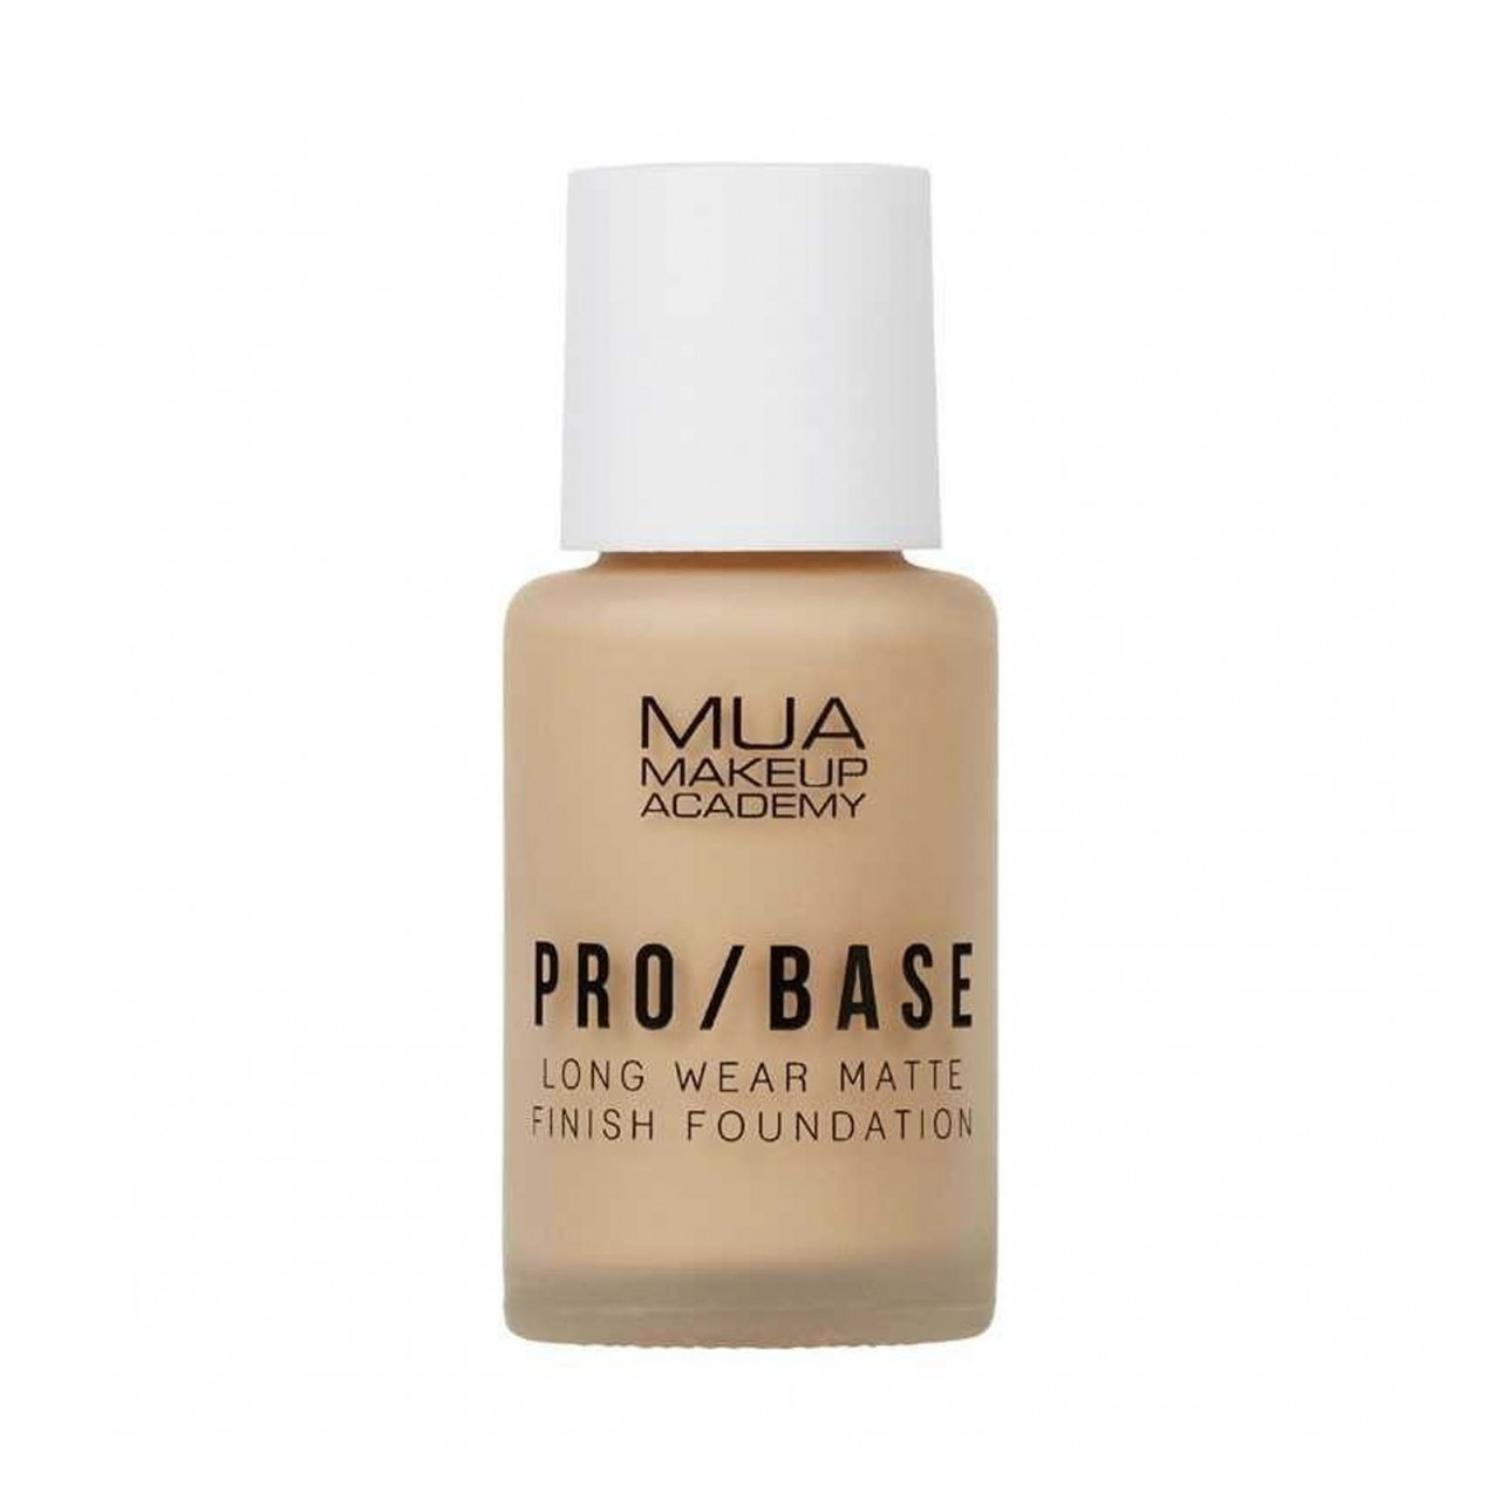 mua make up academy pro / base long wear matte finish foundation - no. 142 (30ml)